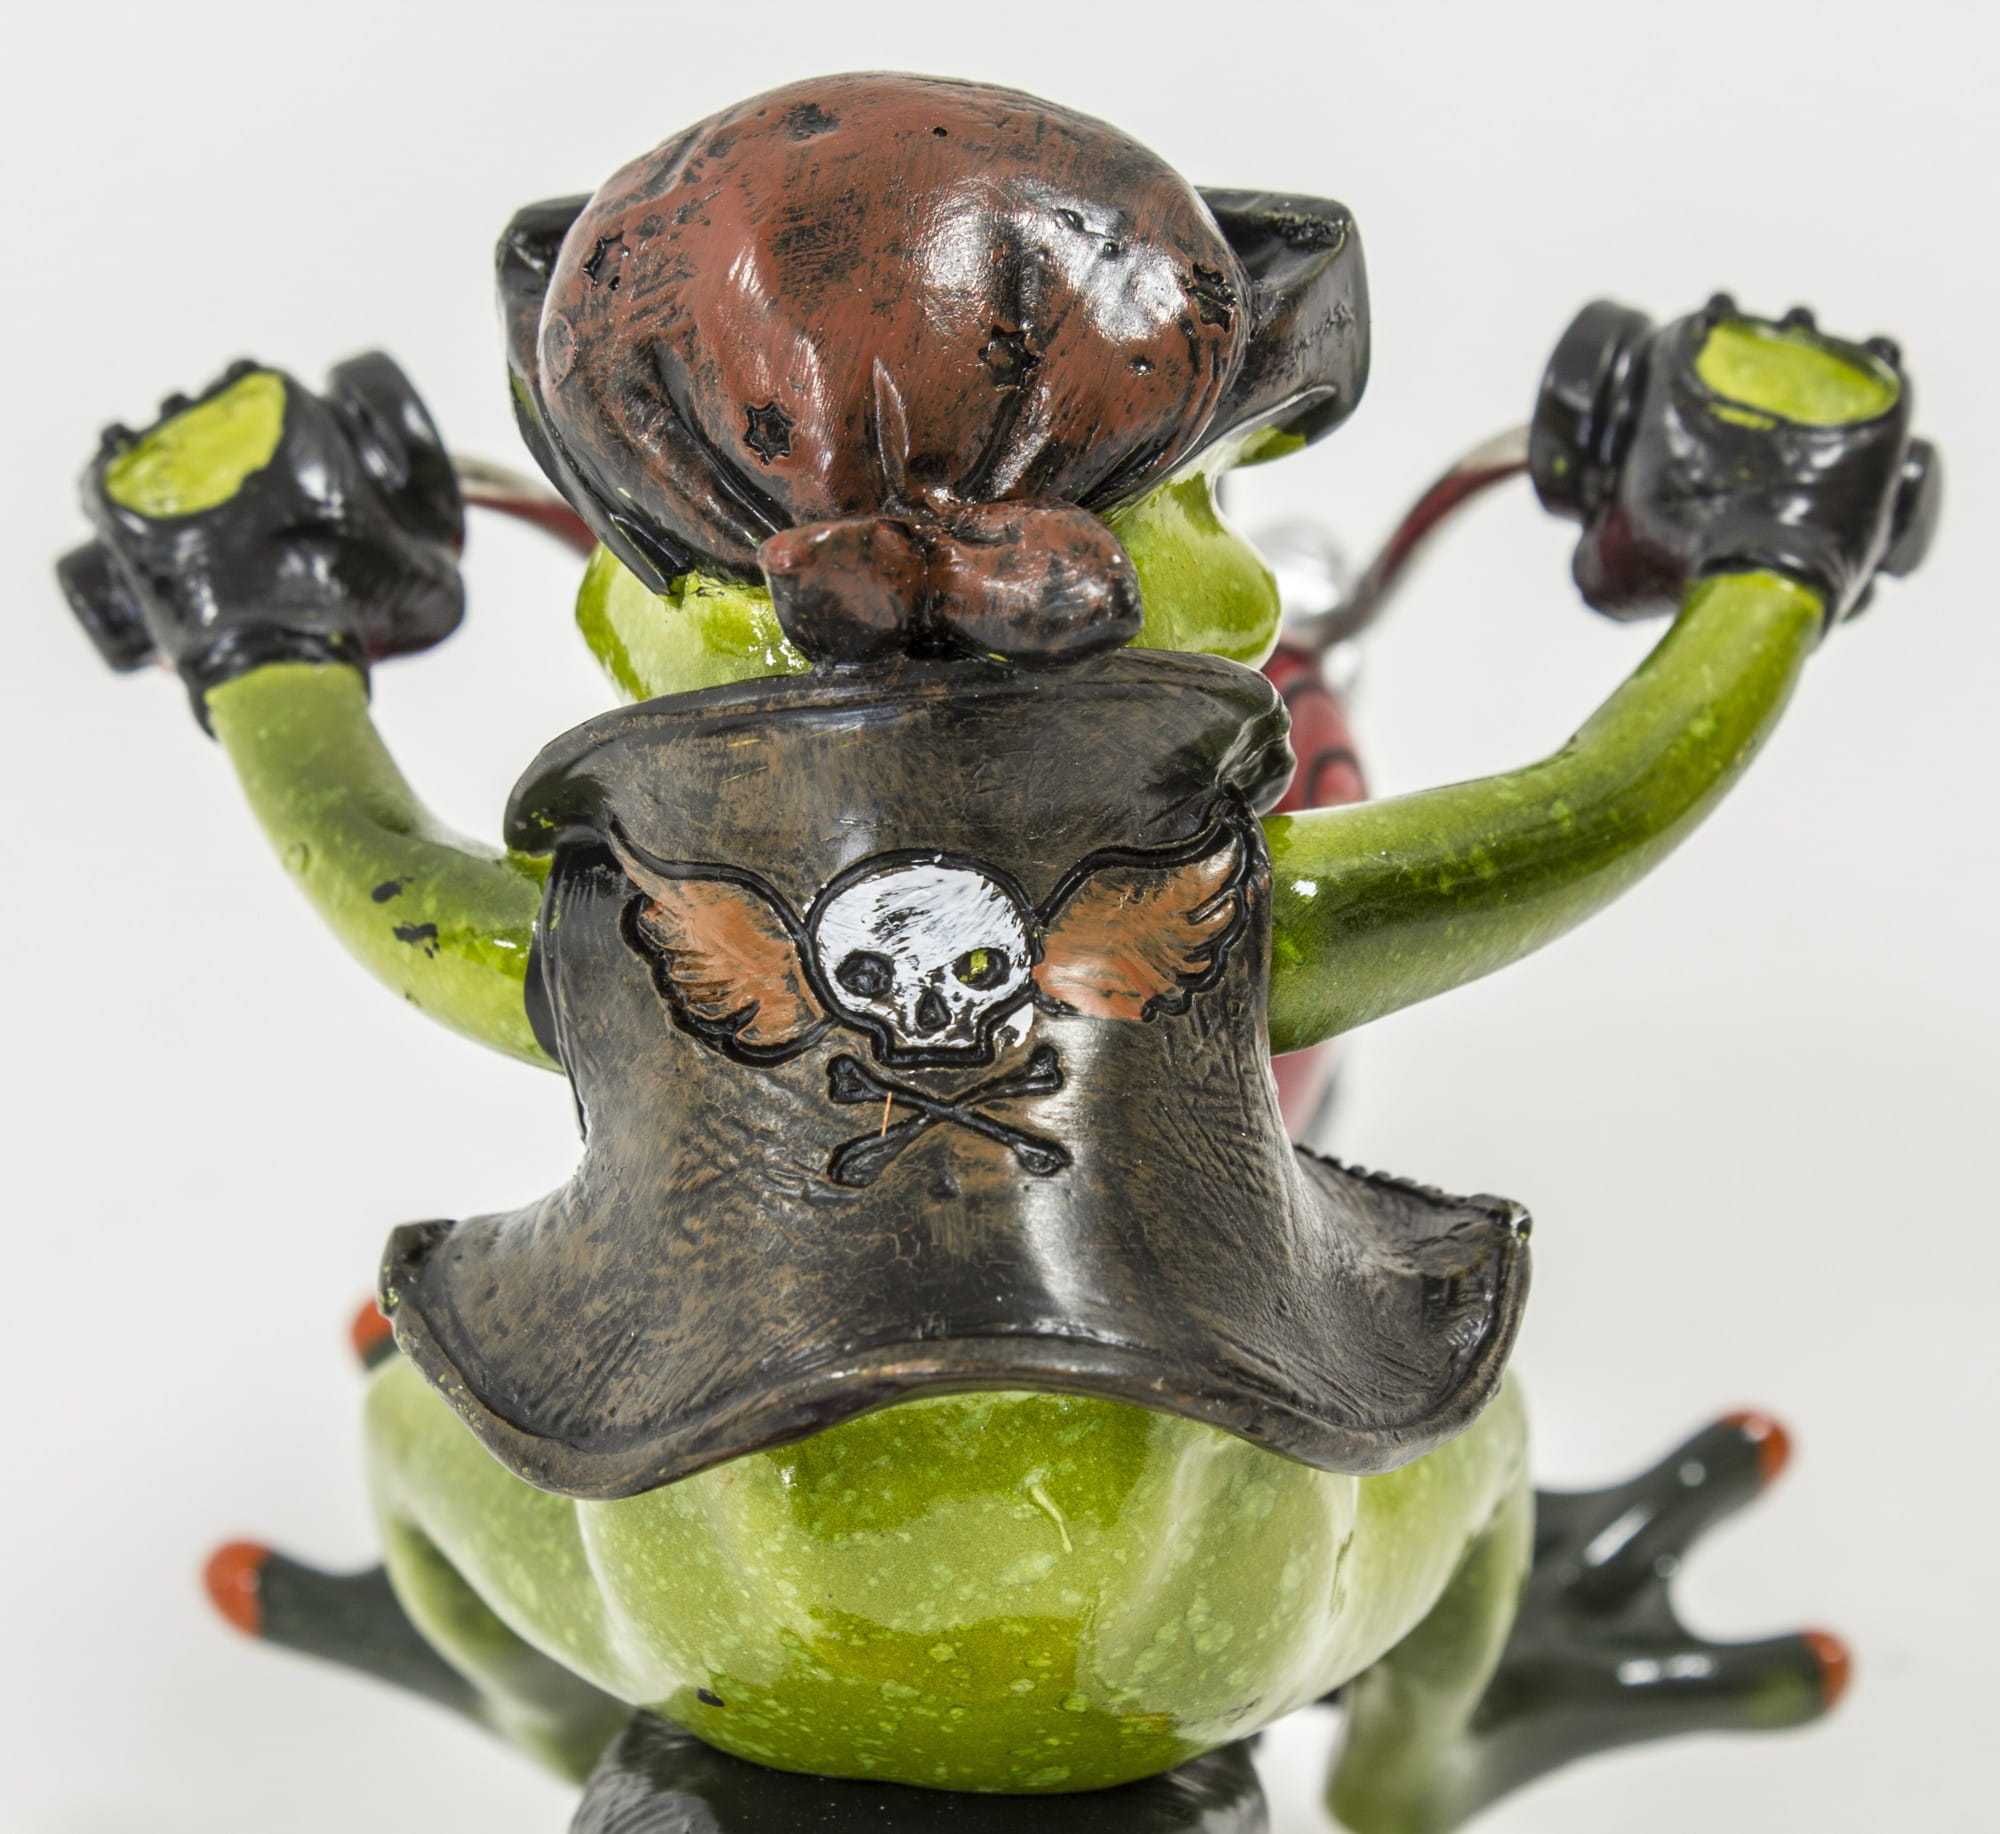 Figurka żaba na motorze 21 cm dekoracja